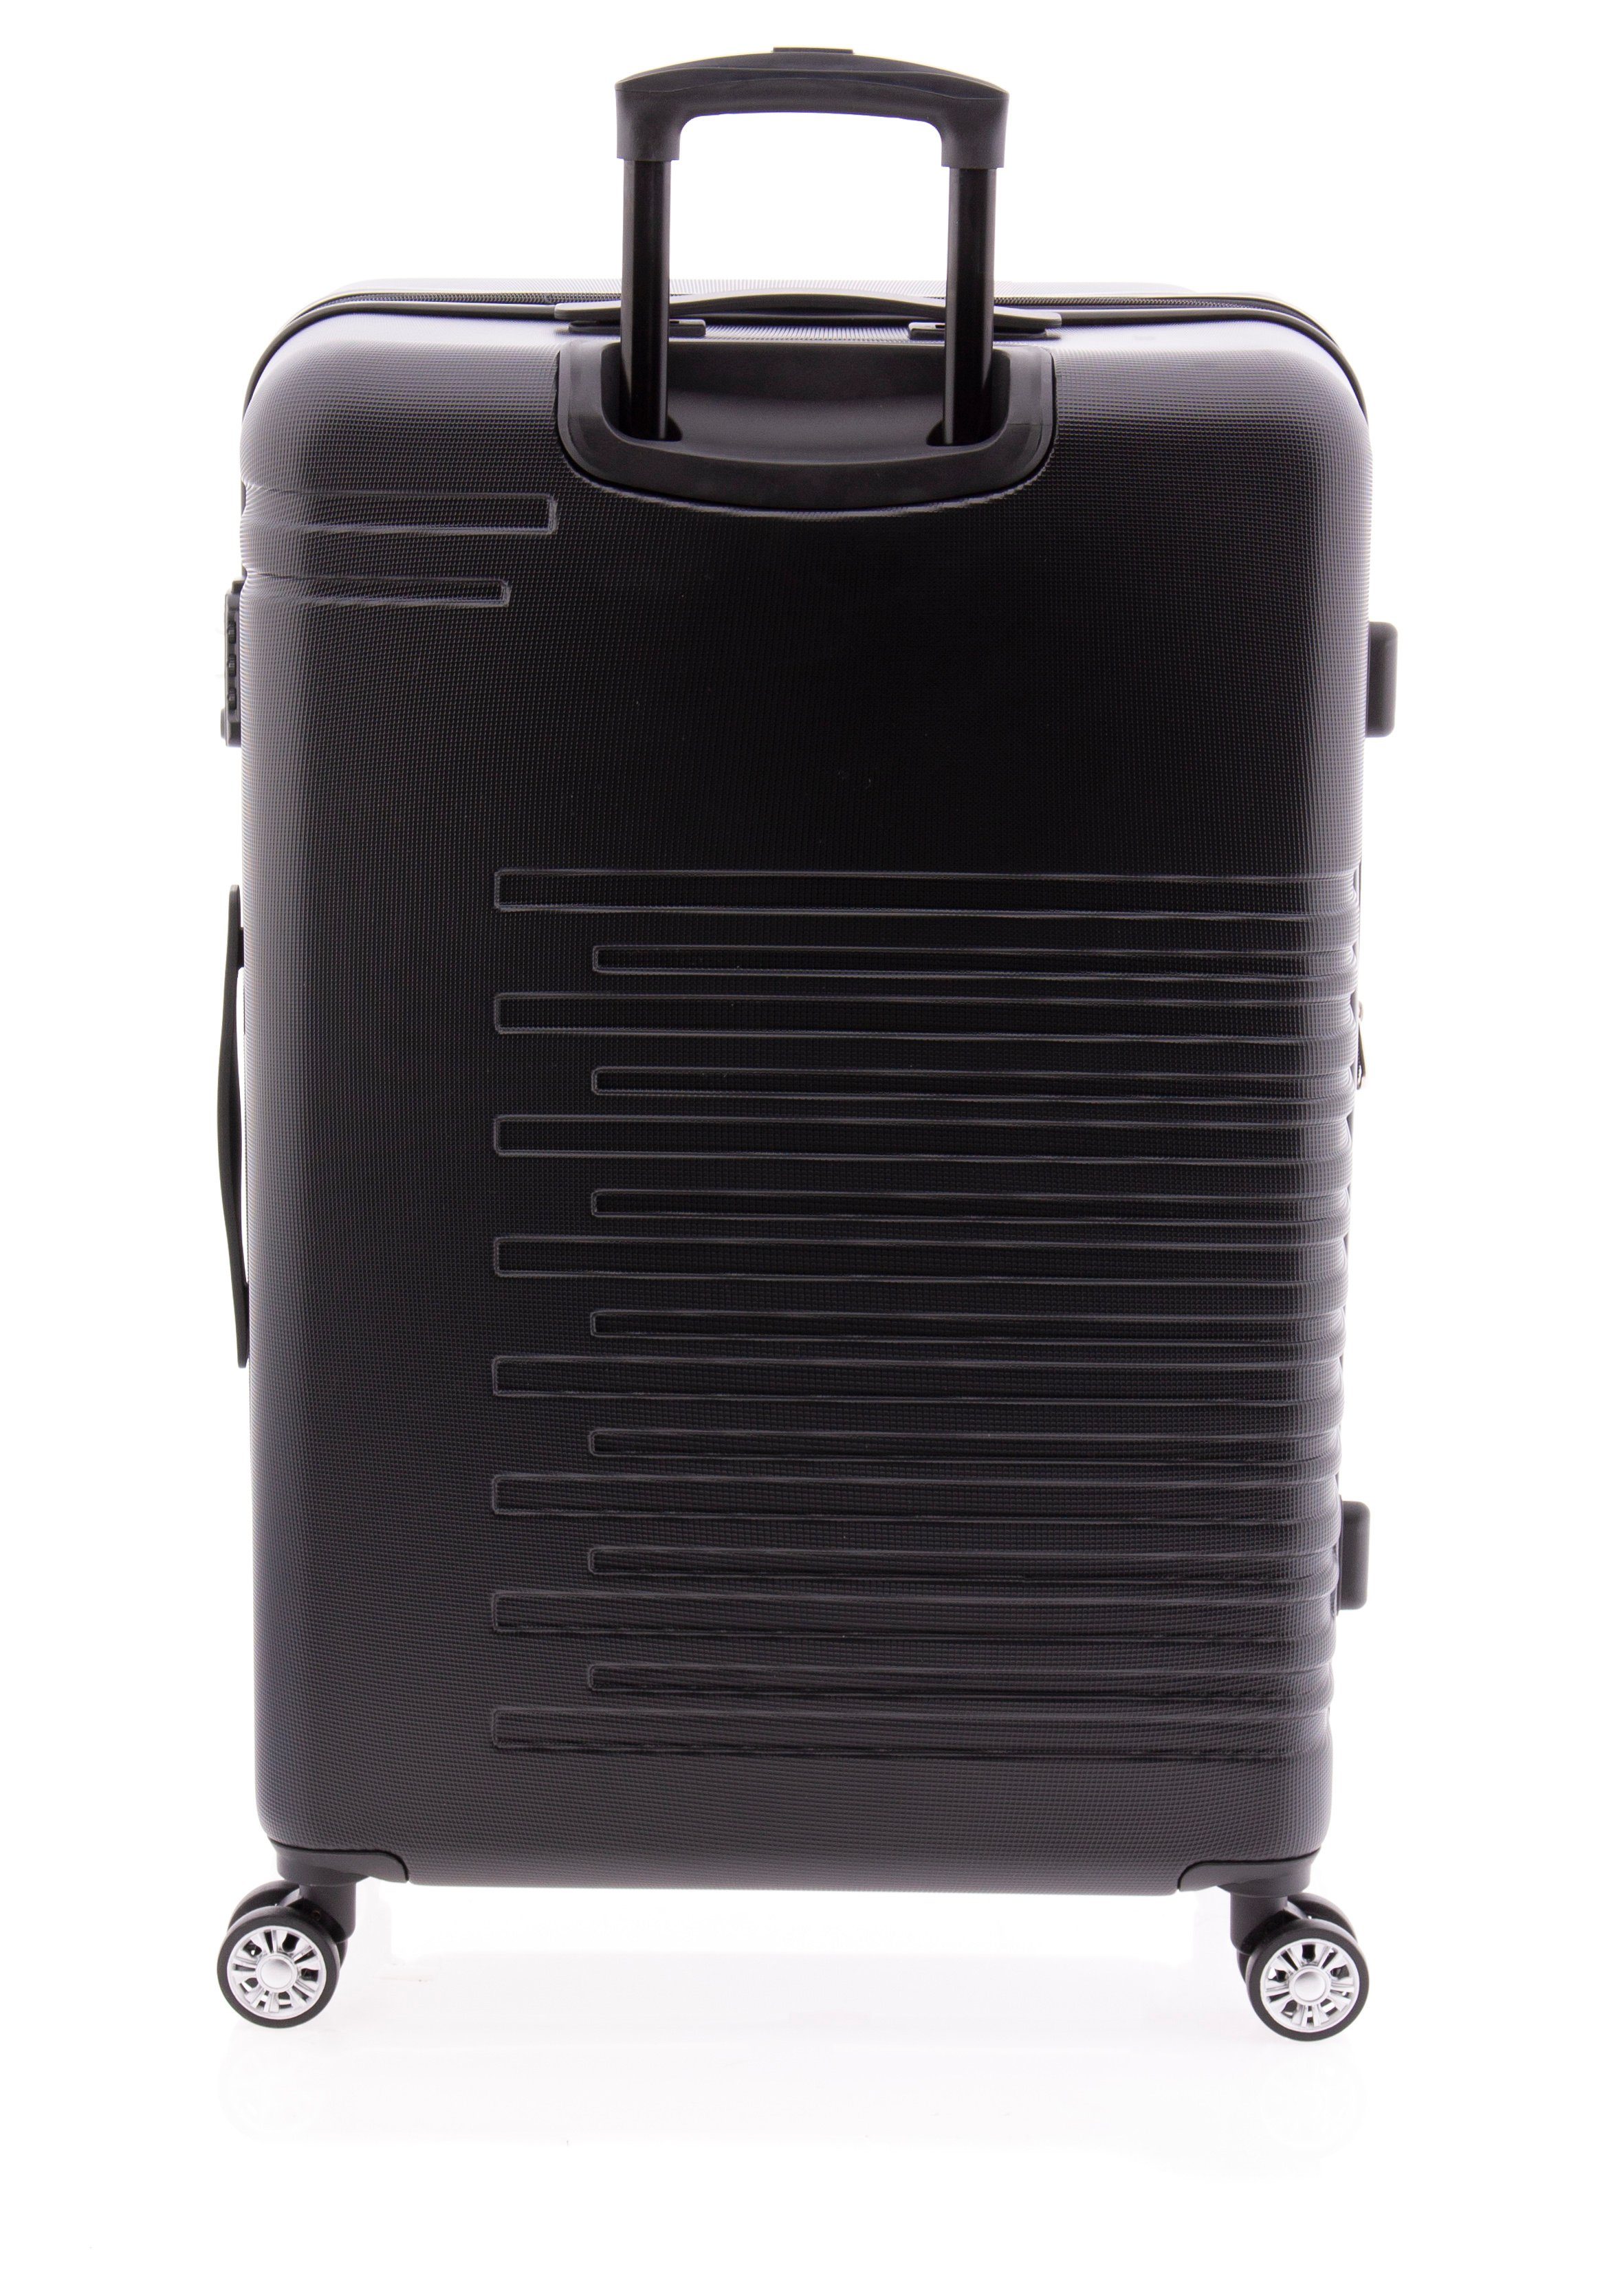 div. GLADIATOR Weichgepäck-Trolley TSA, Dehnfalte, schwarz Farben Koffer Rollen, cm, 4 67